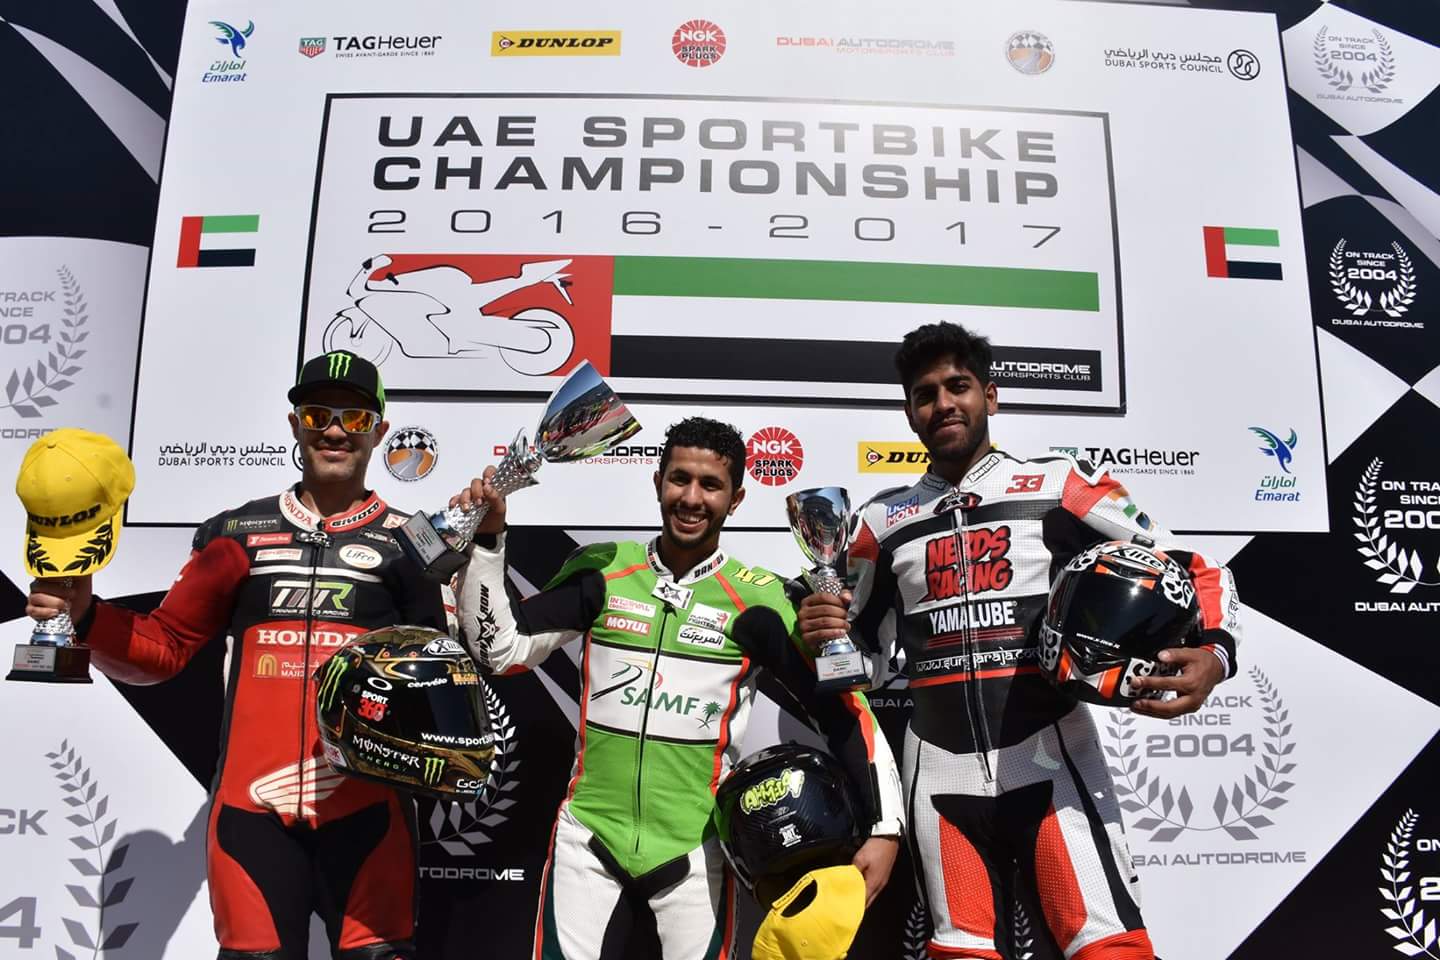 السعودي "احمد المعيني" يحقق المركز الأول في سباق الجولة الافتتاحية بطولة الامارات العربية المتحدة للدراجات النارية فئة السوبر سبورت 1